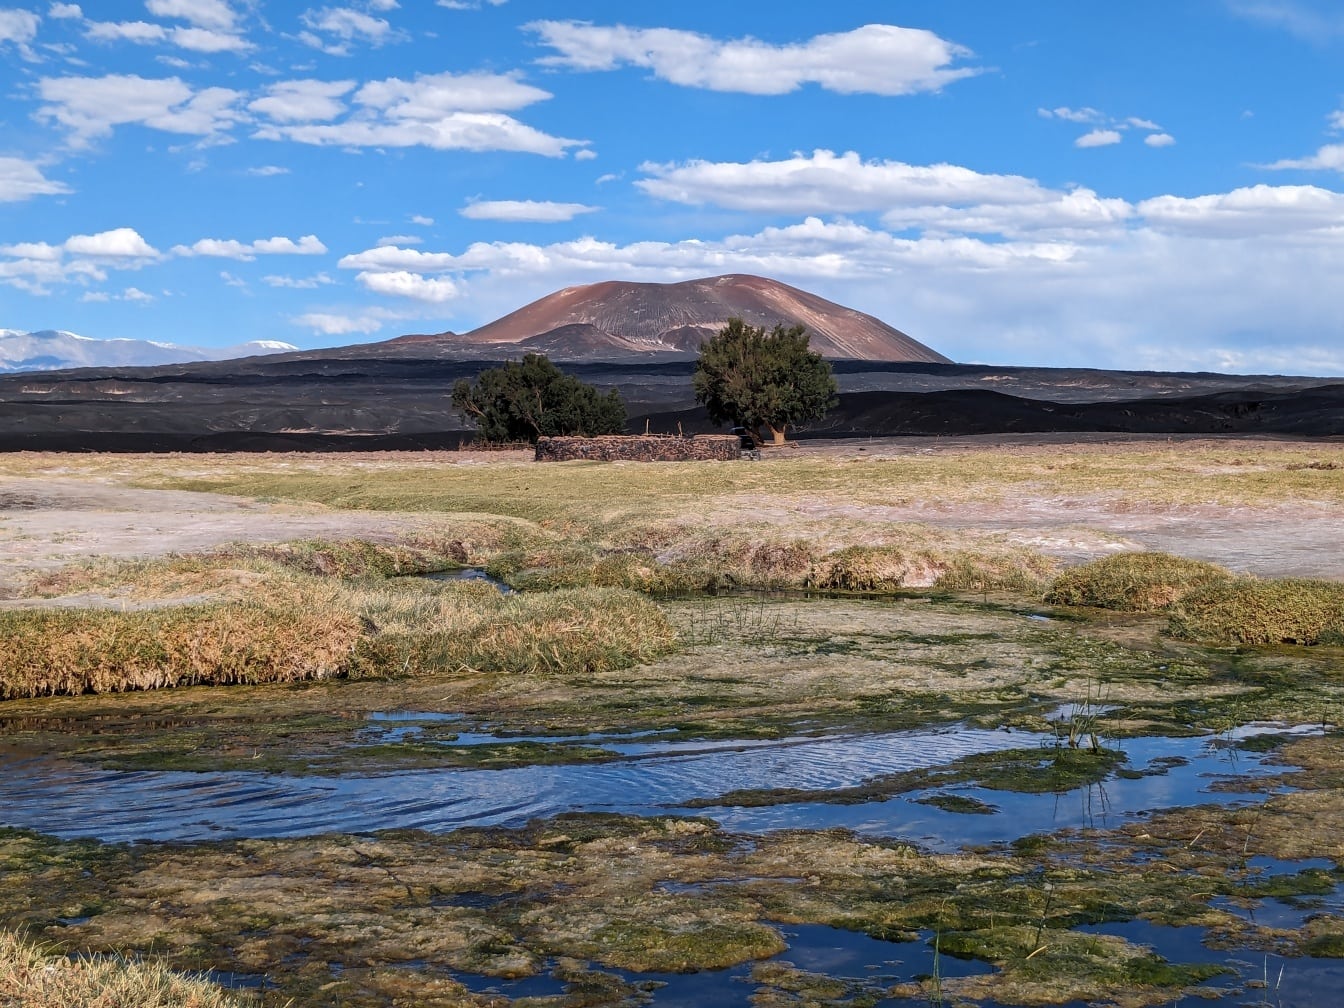 Sumpfgebiet auf Hochebene in der Wüste Catamarca in Argentinien